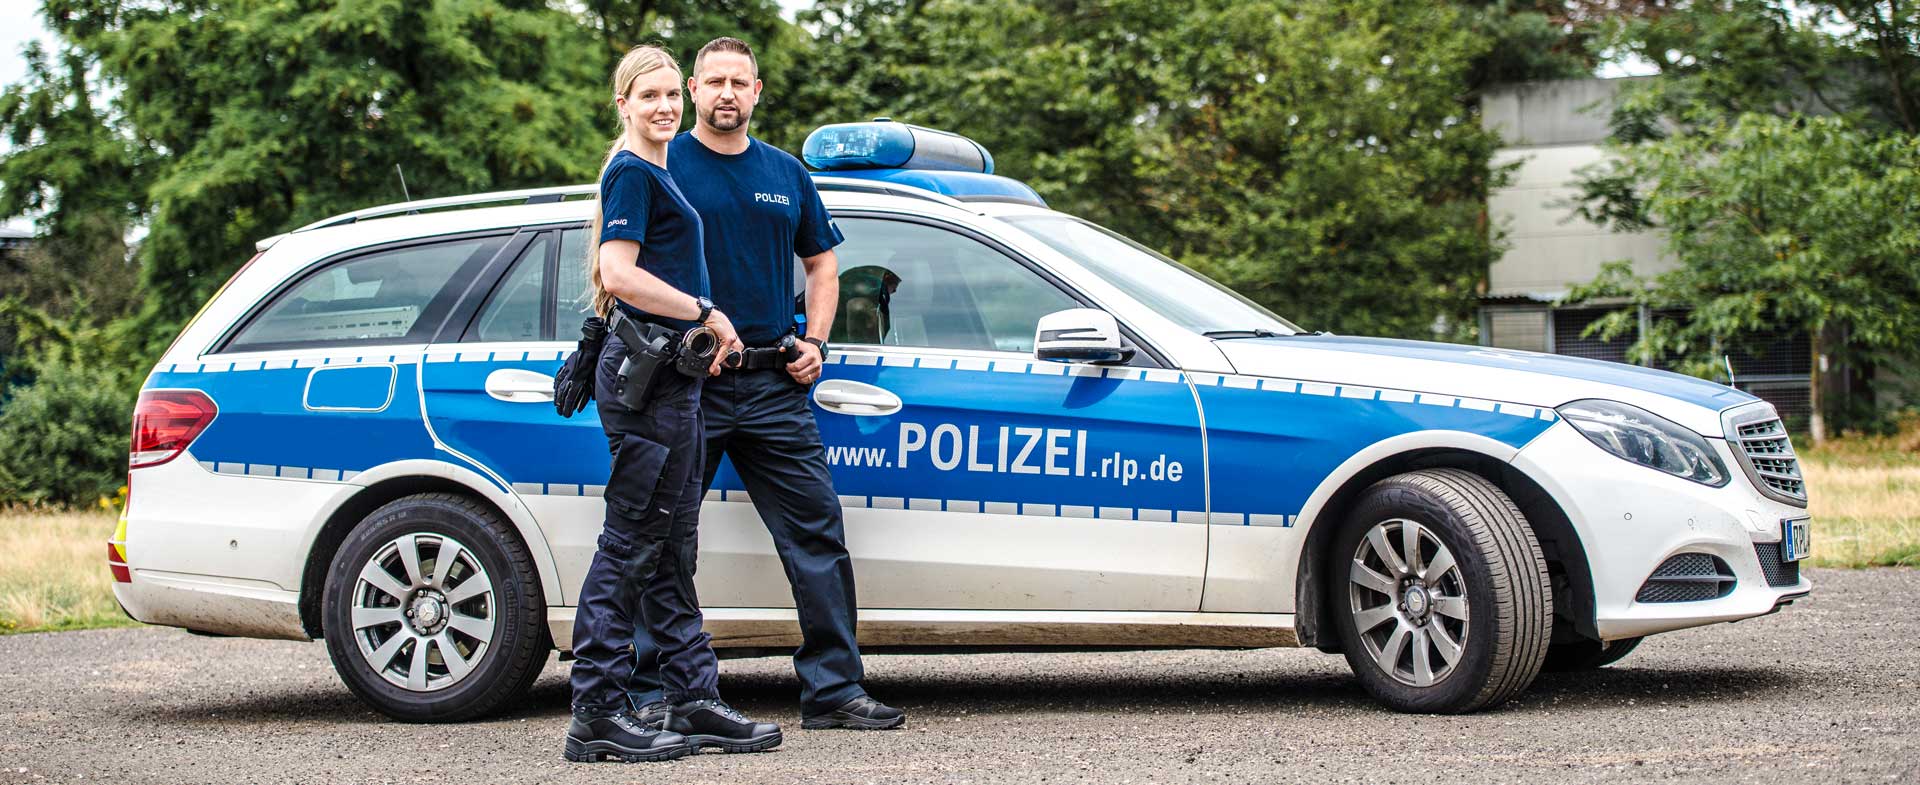 Bonowi Police Rhineland Palatinate